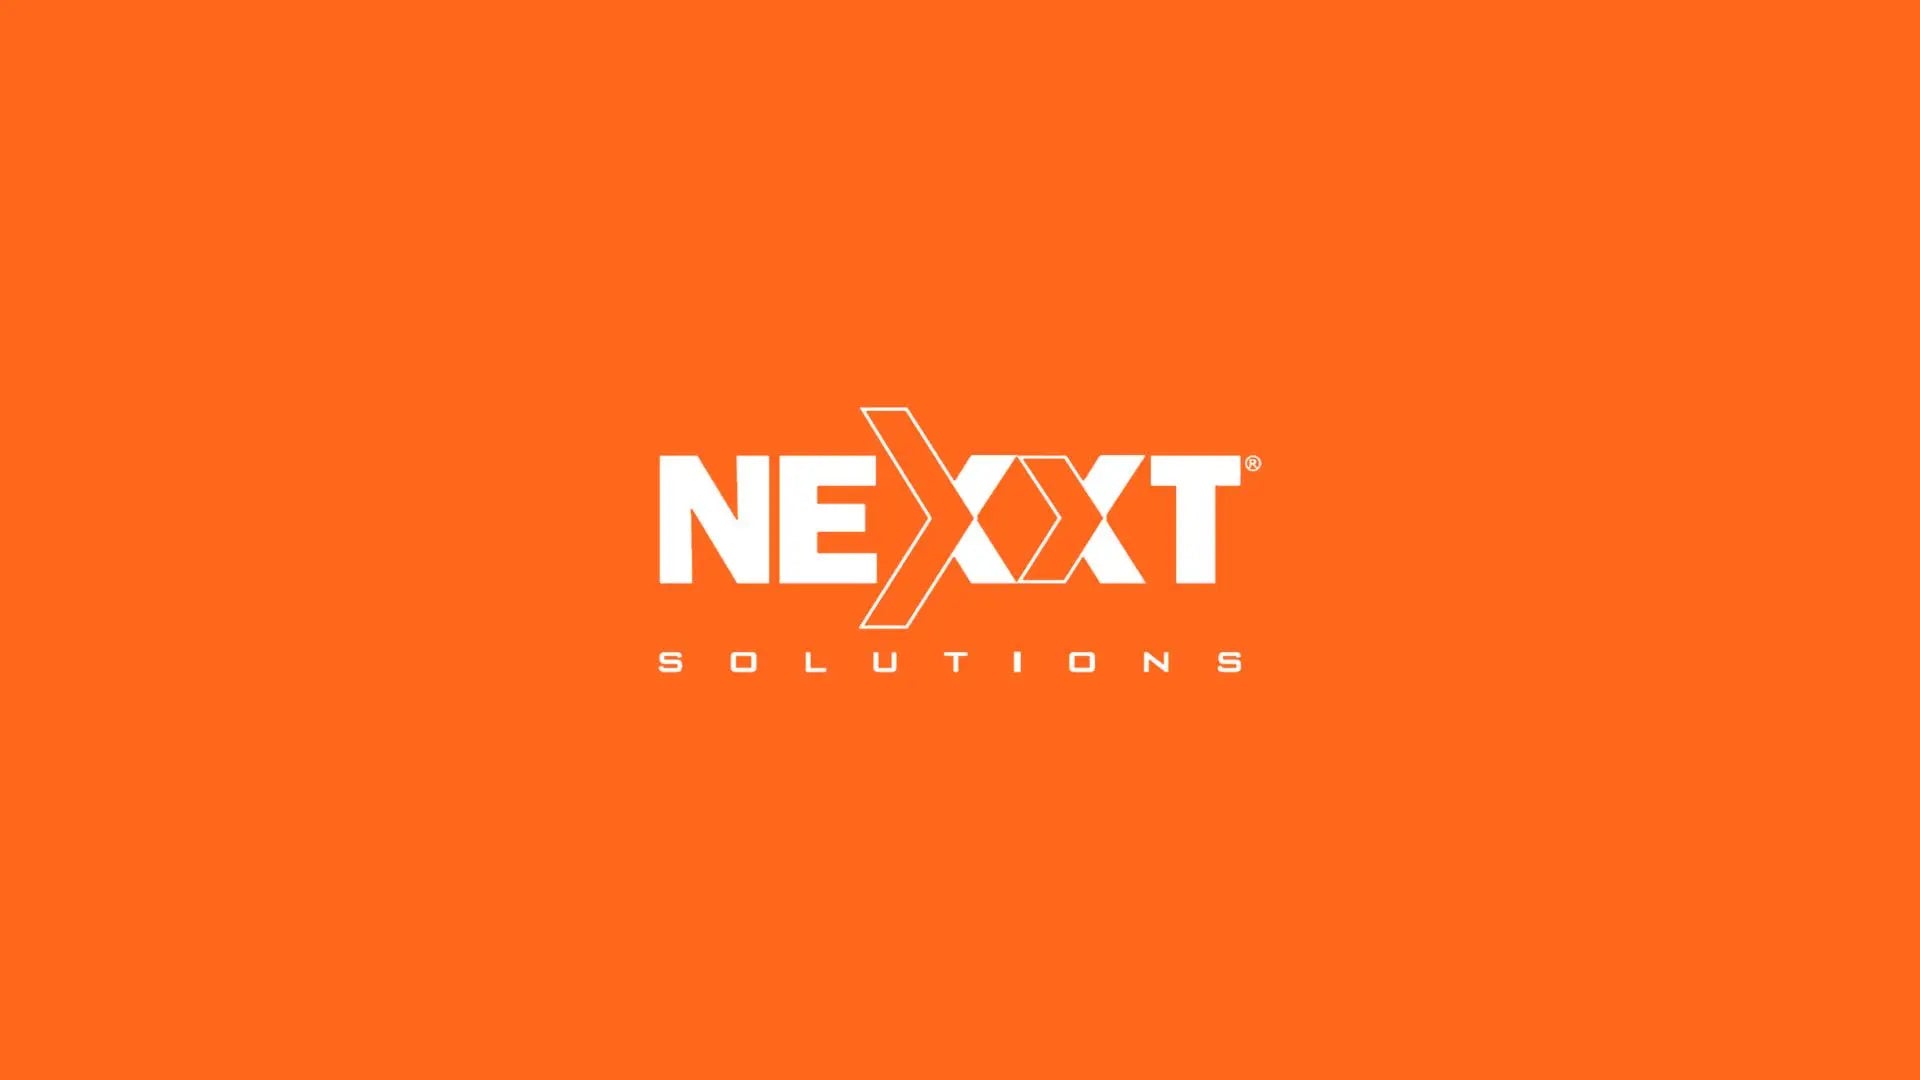 Nexxt Solutions yapcr.com Costa Rica